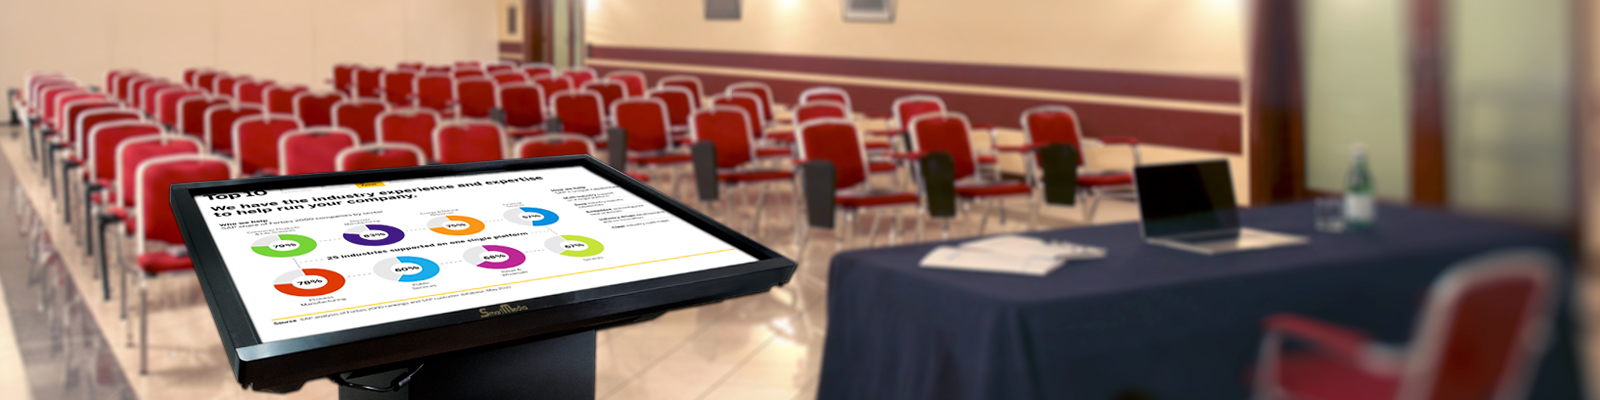 tavoli multimediali per conferenze